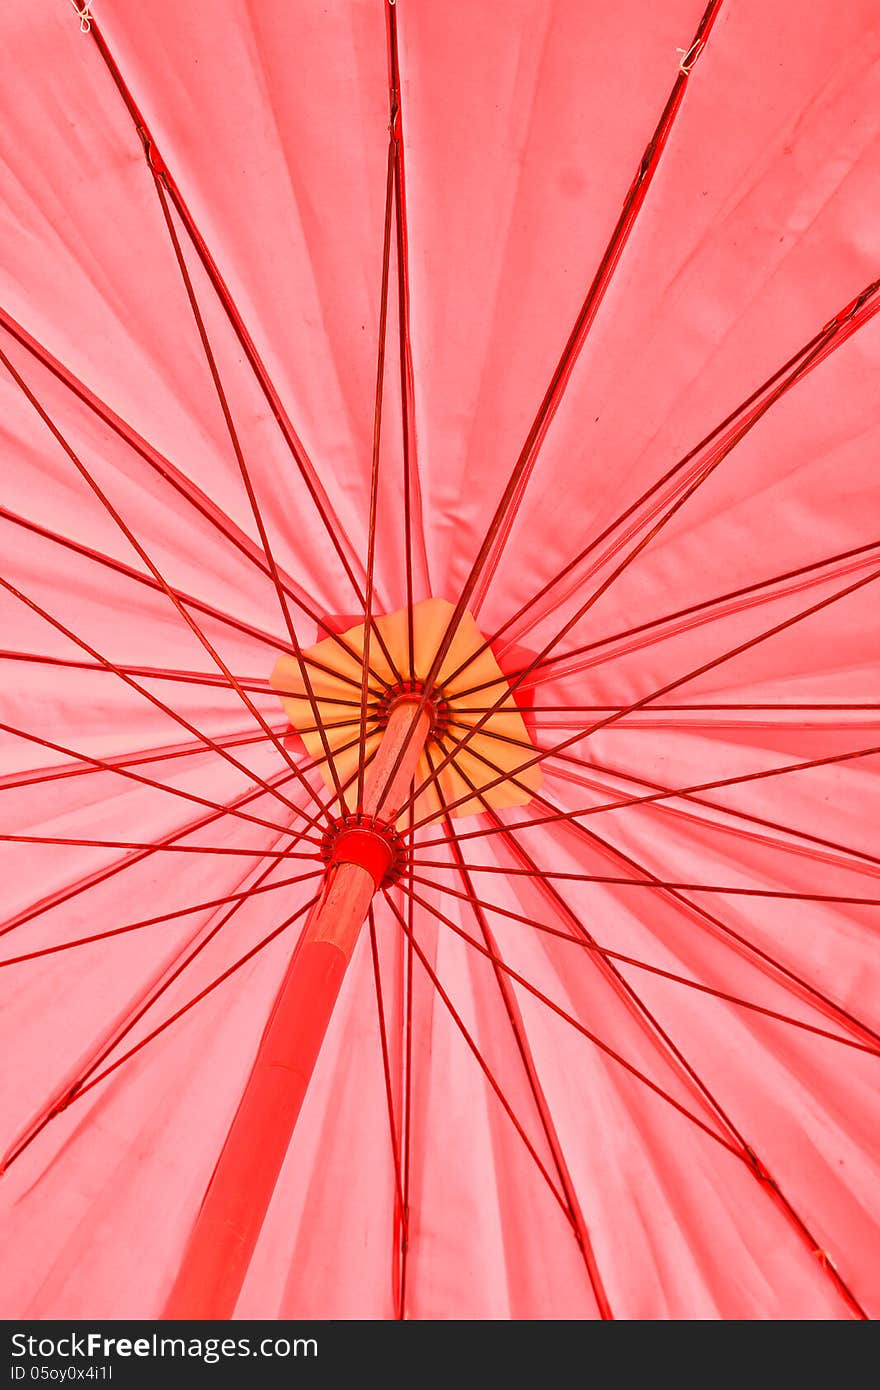 Red umbrella under the sun